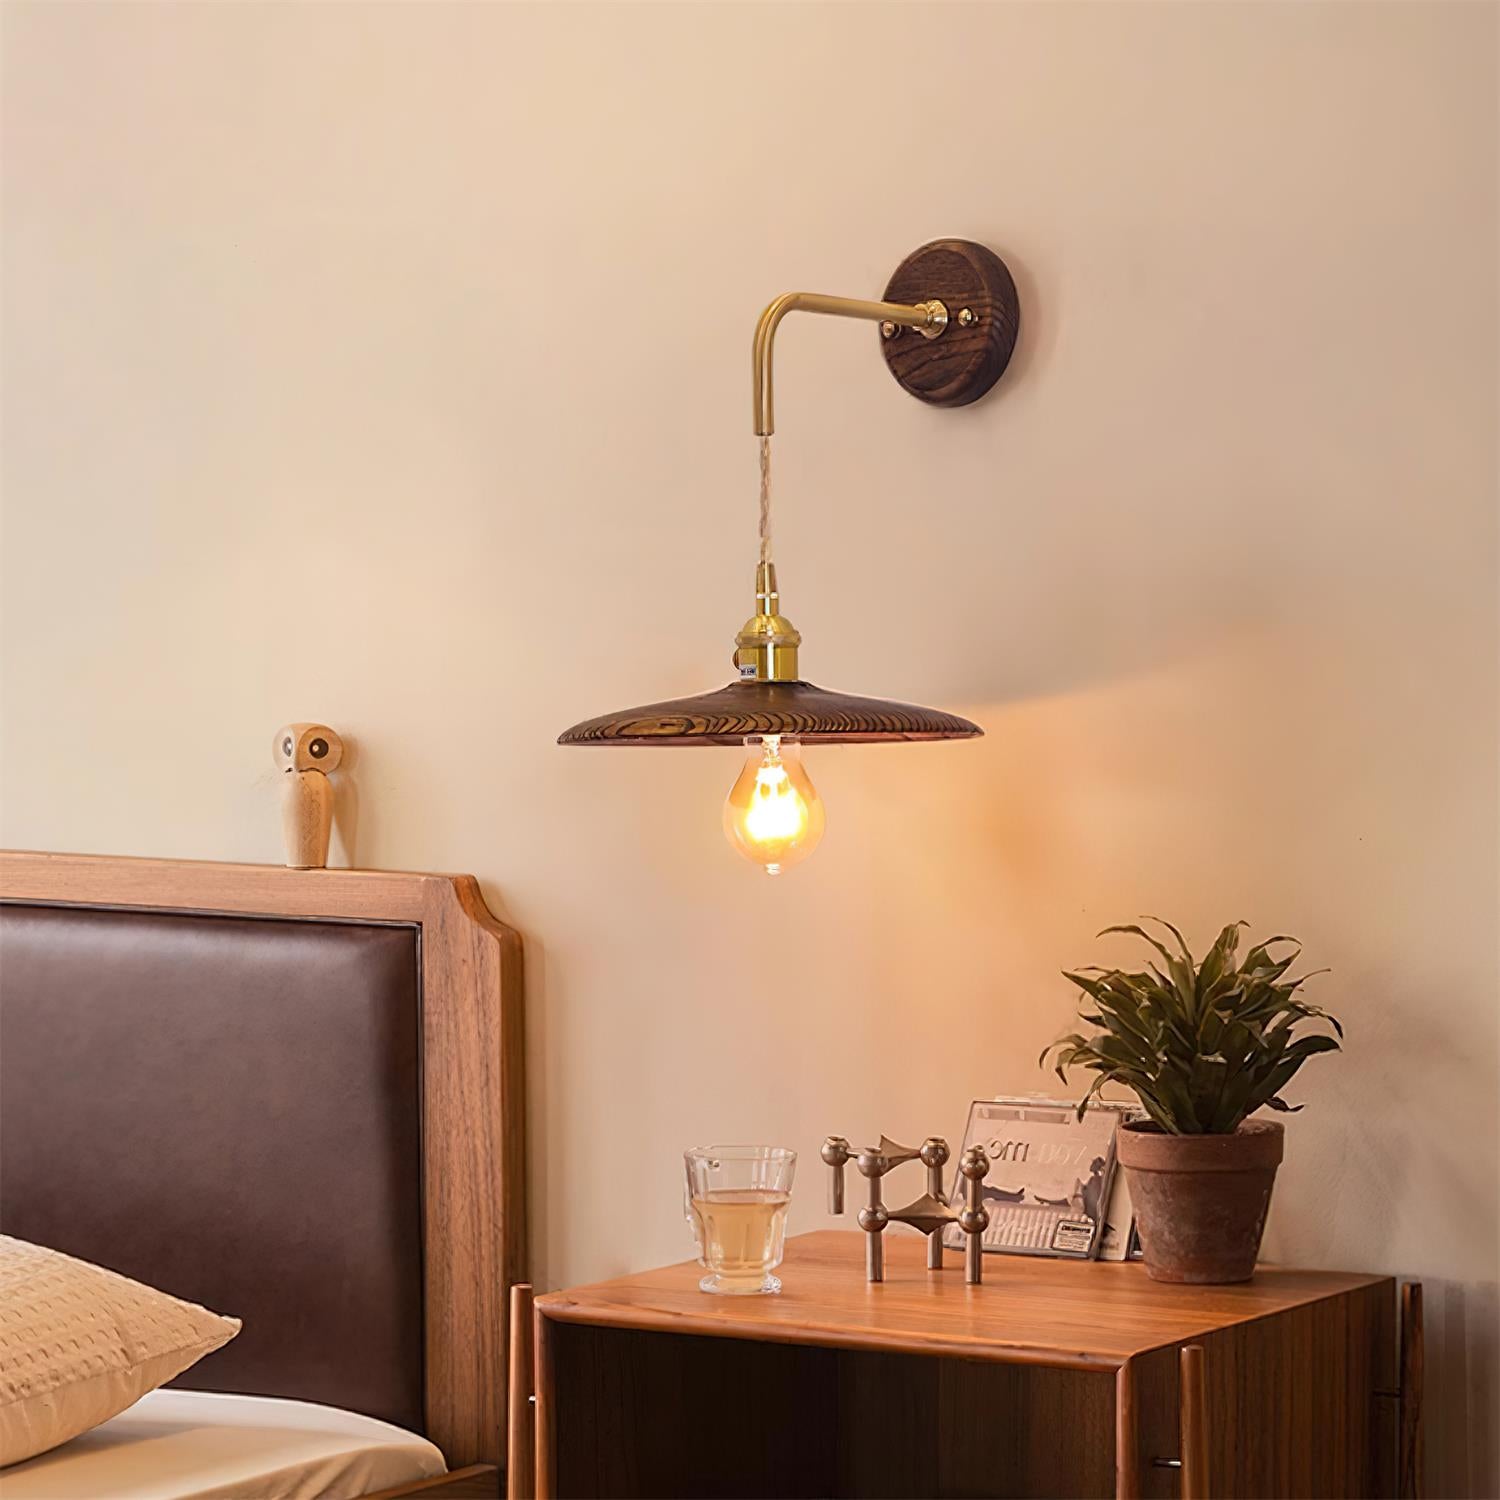 Runia Wood Wall Lamp